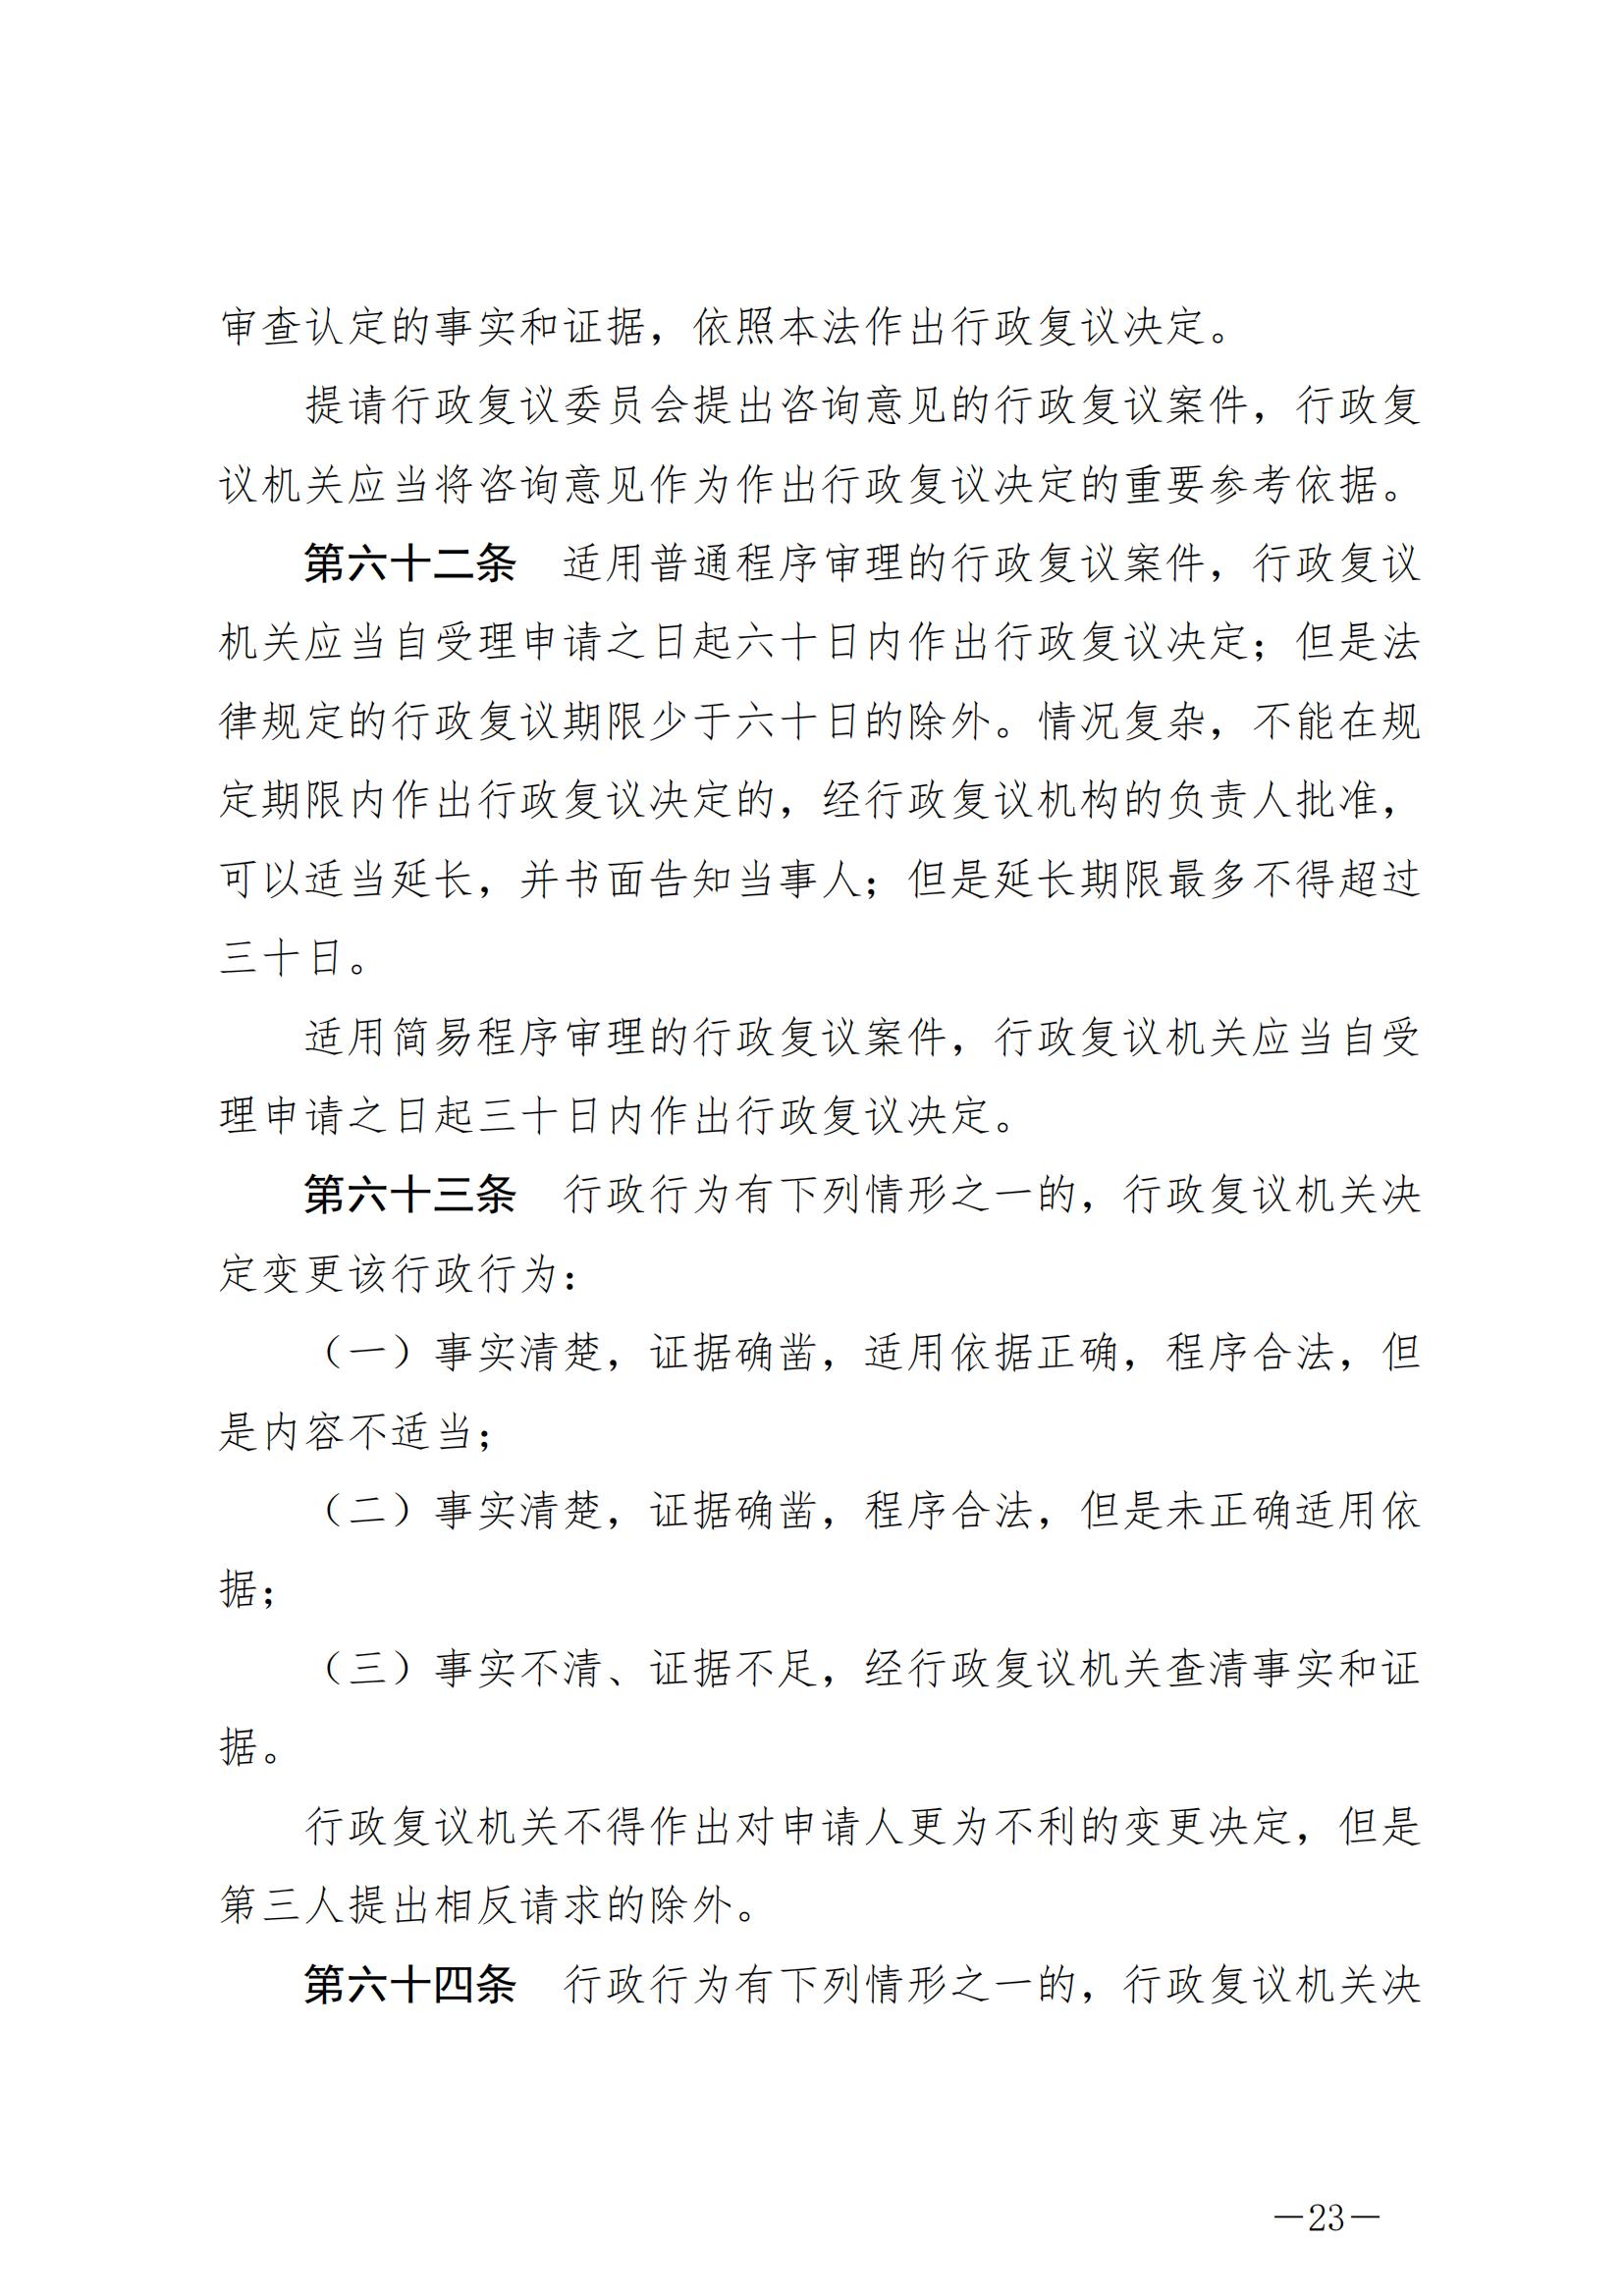 《中华人民共和国行政复议法》_20231204154310_22.jpg